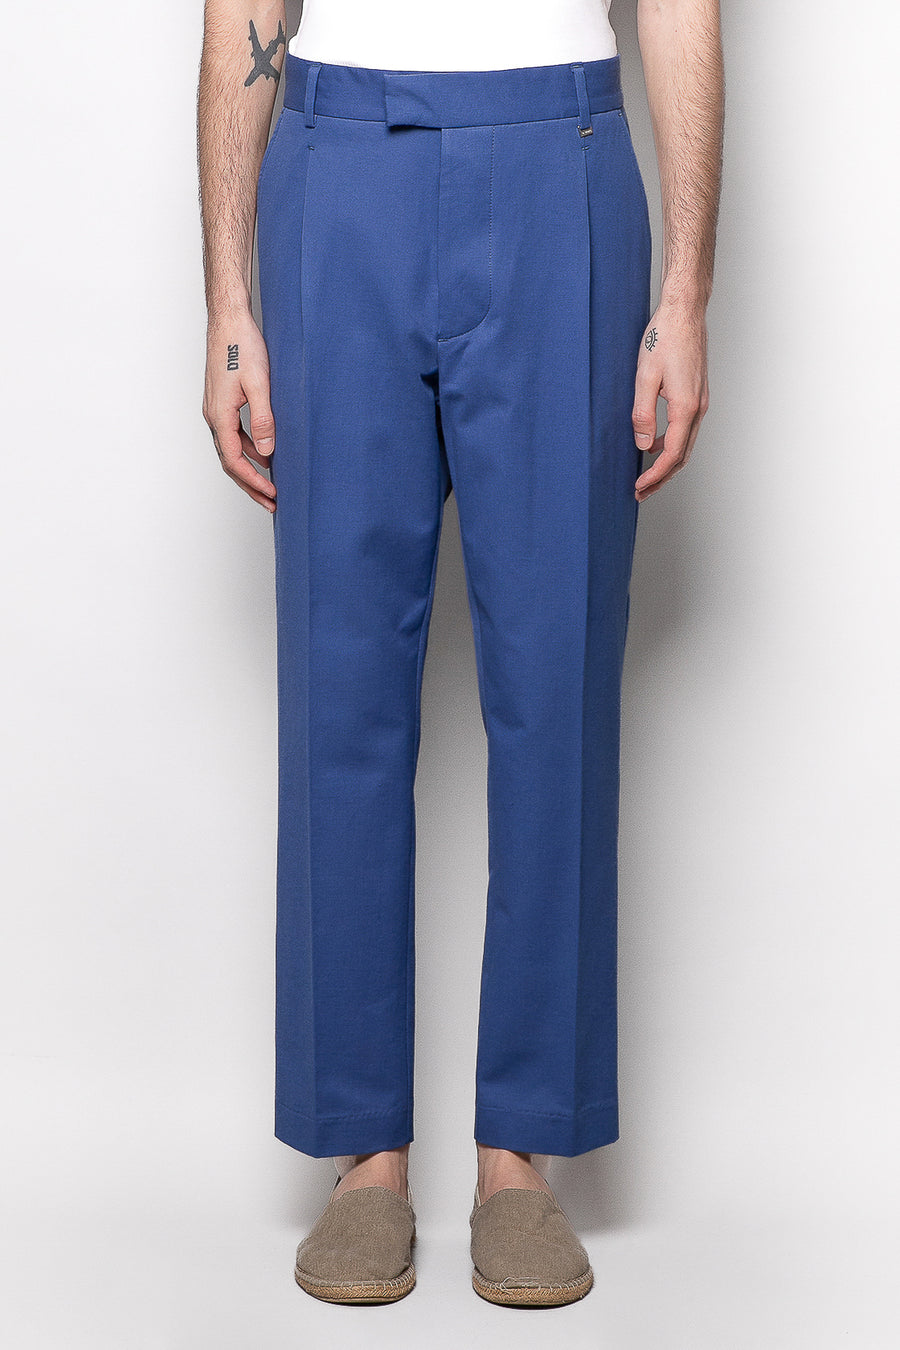 Pantalone tasca america una pince in cotone - Blu